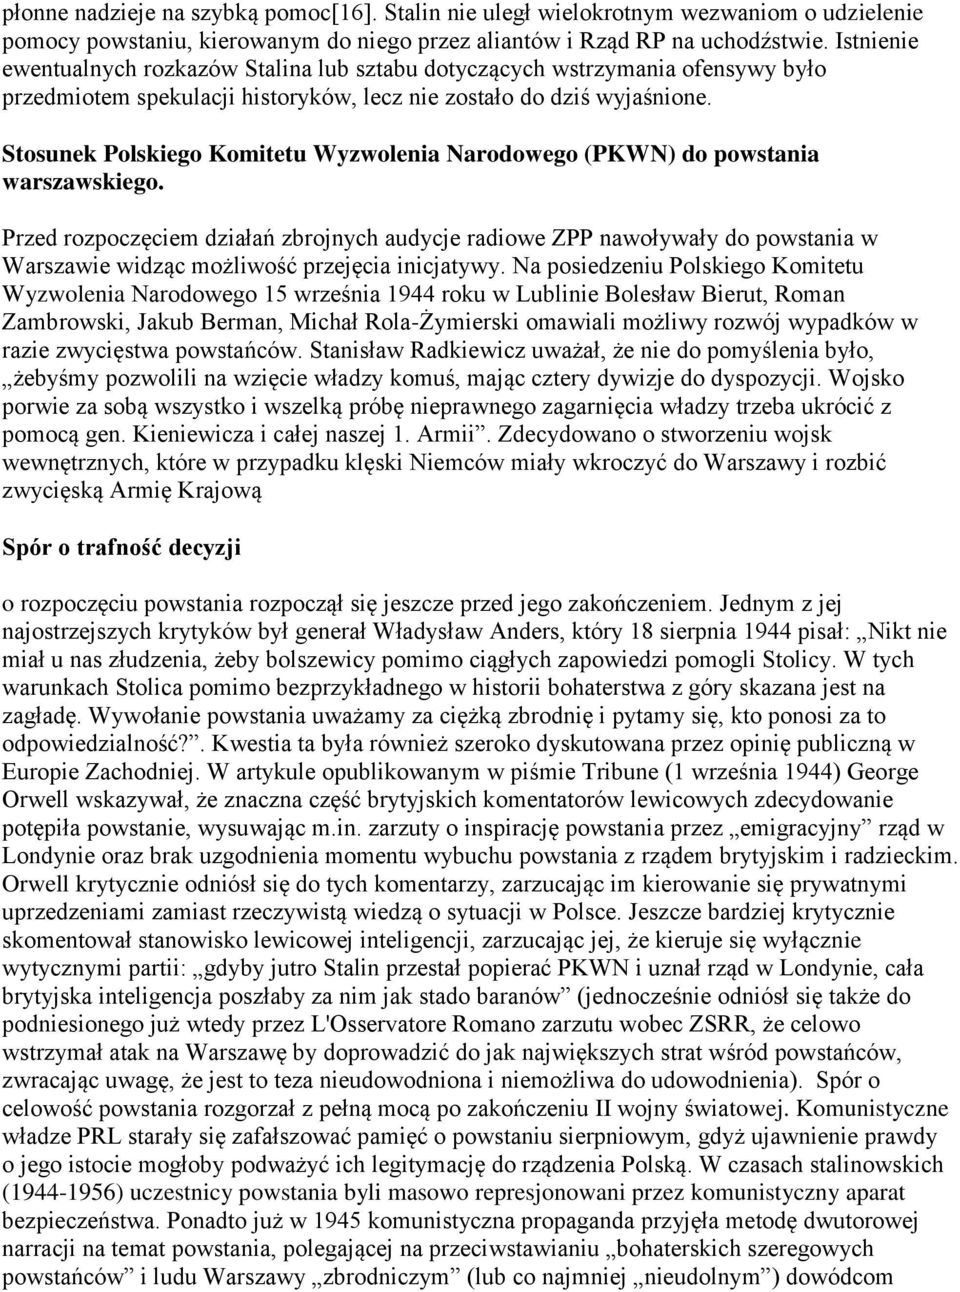 Stosunek Polskiego Komitetu Wyzwolenia Narodowego (PKWN) do powstania warszawskiego.